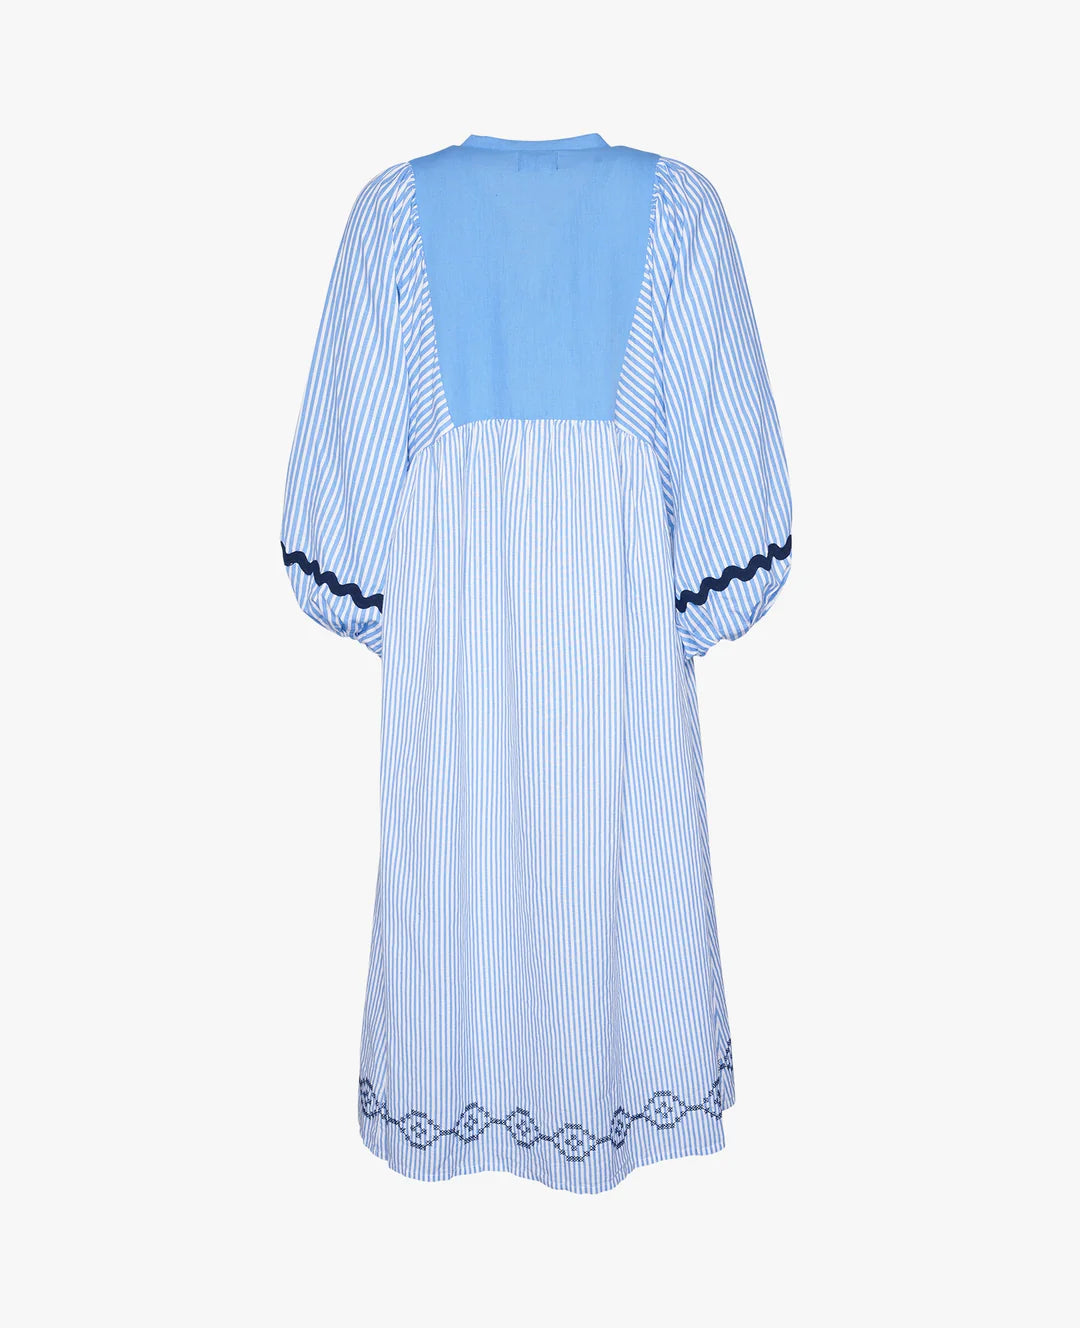 Beate Organic Linen-Cotton Dress Blue